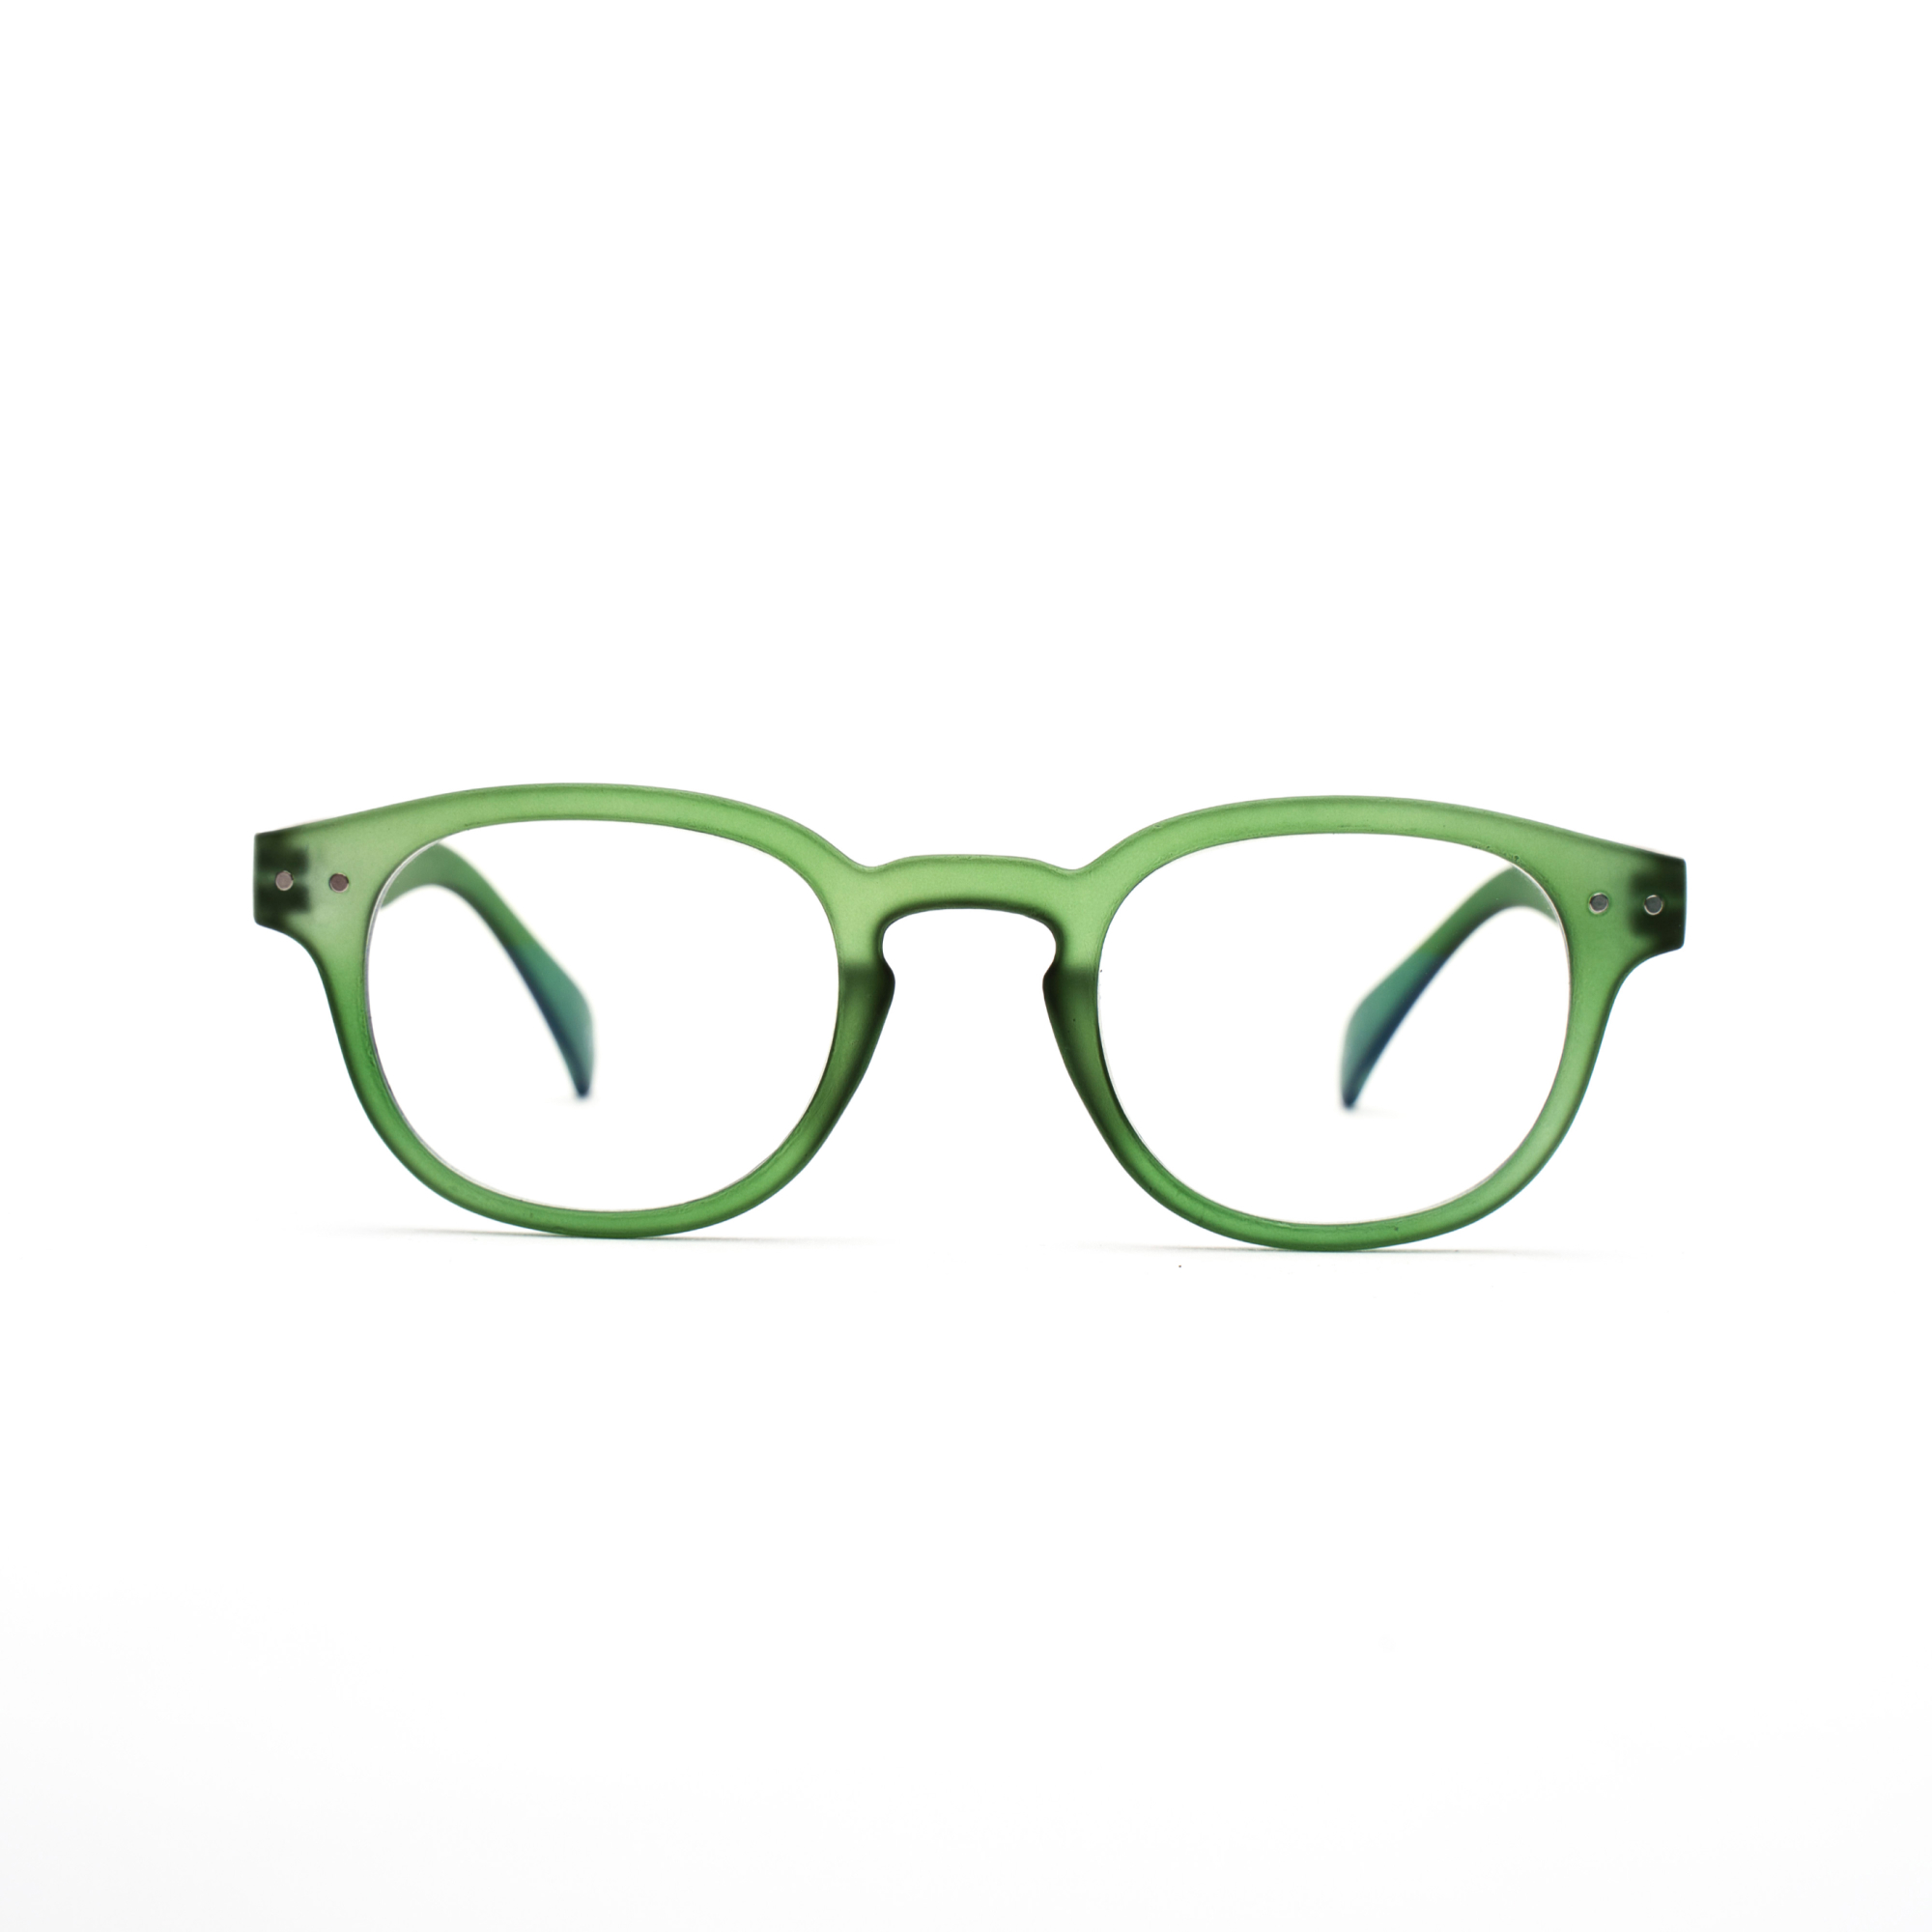 women's reading glasses – Anton ultimate - Green